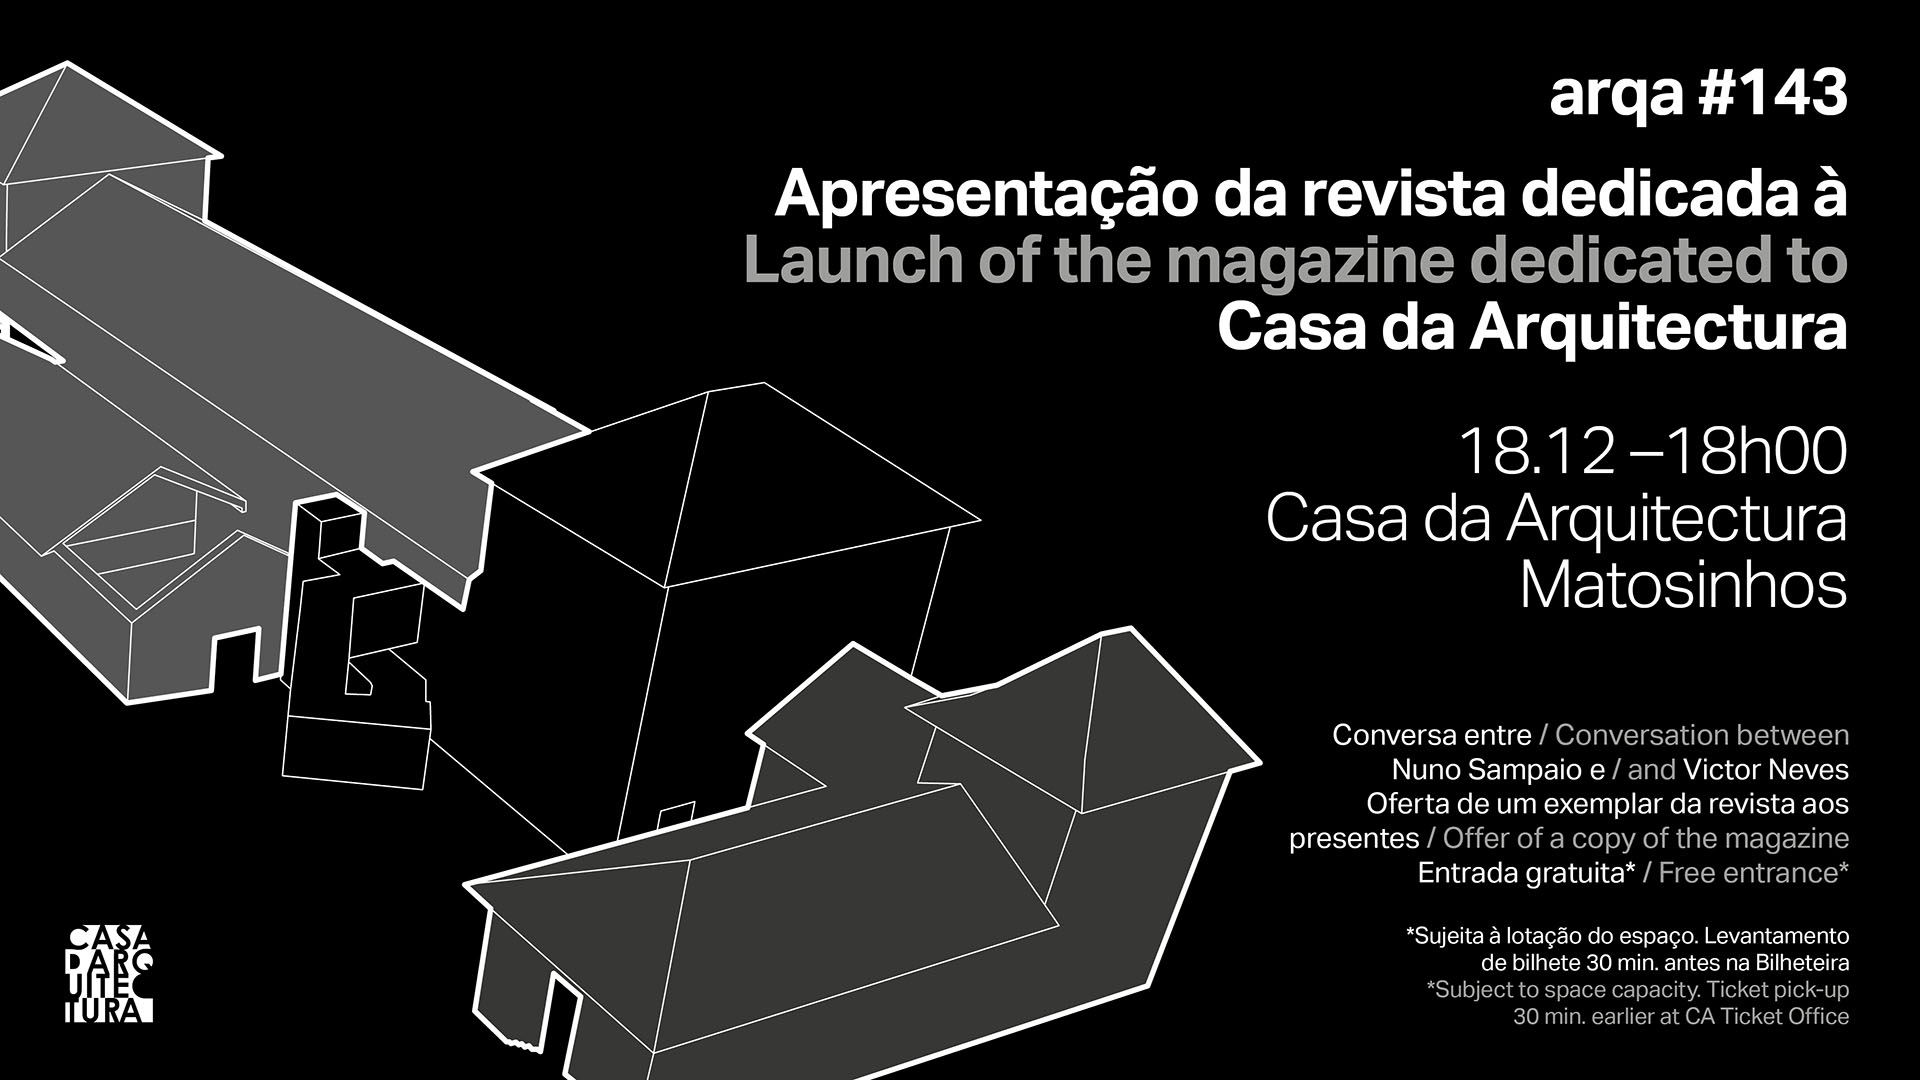 Apresentação Revista arqa #143 dedicada à Casa da Arquitectura